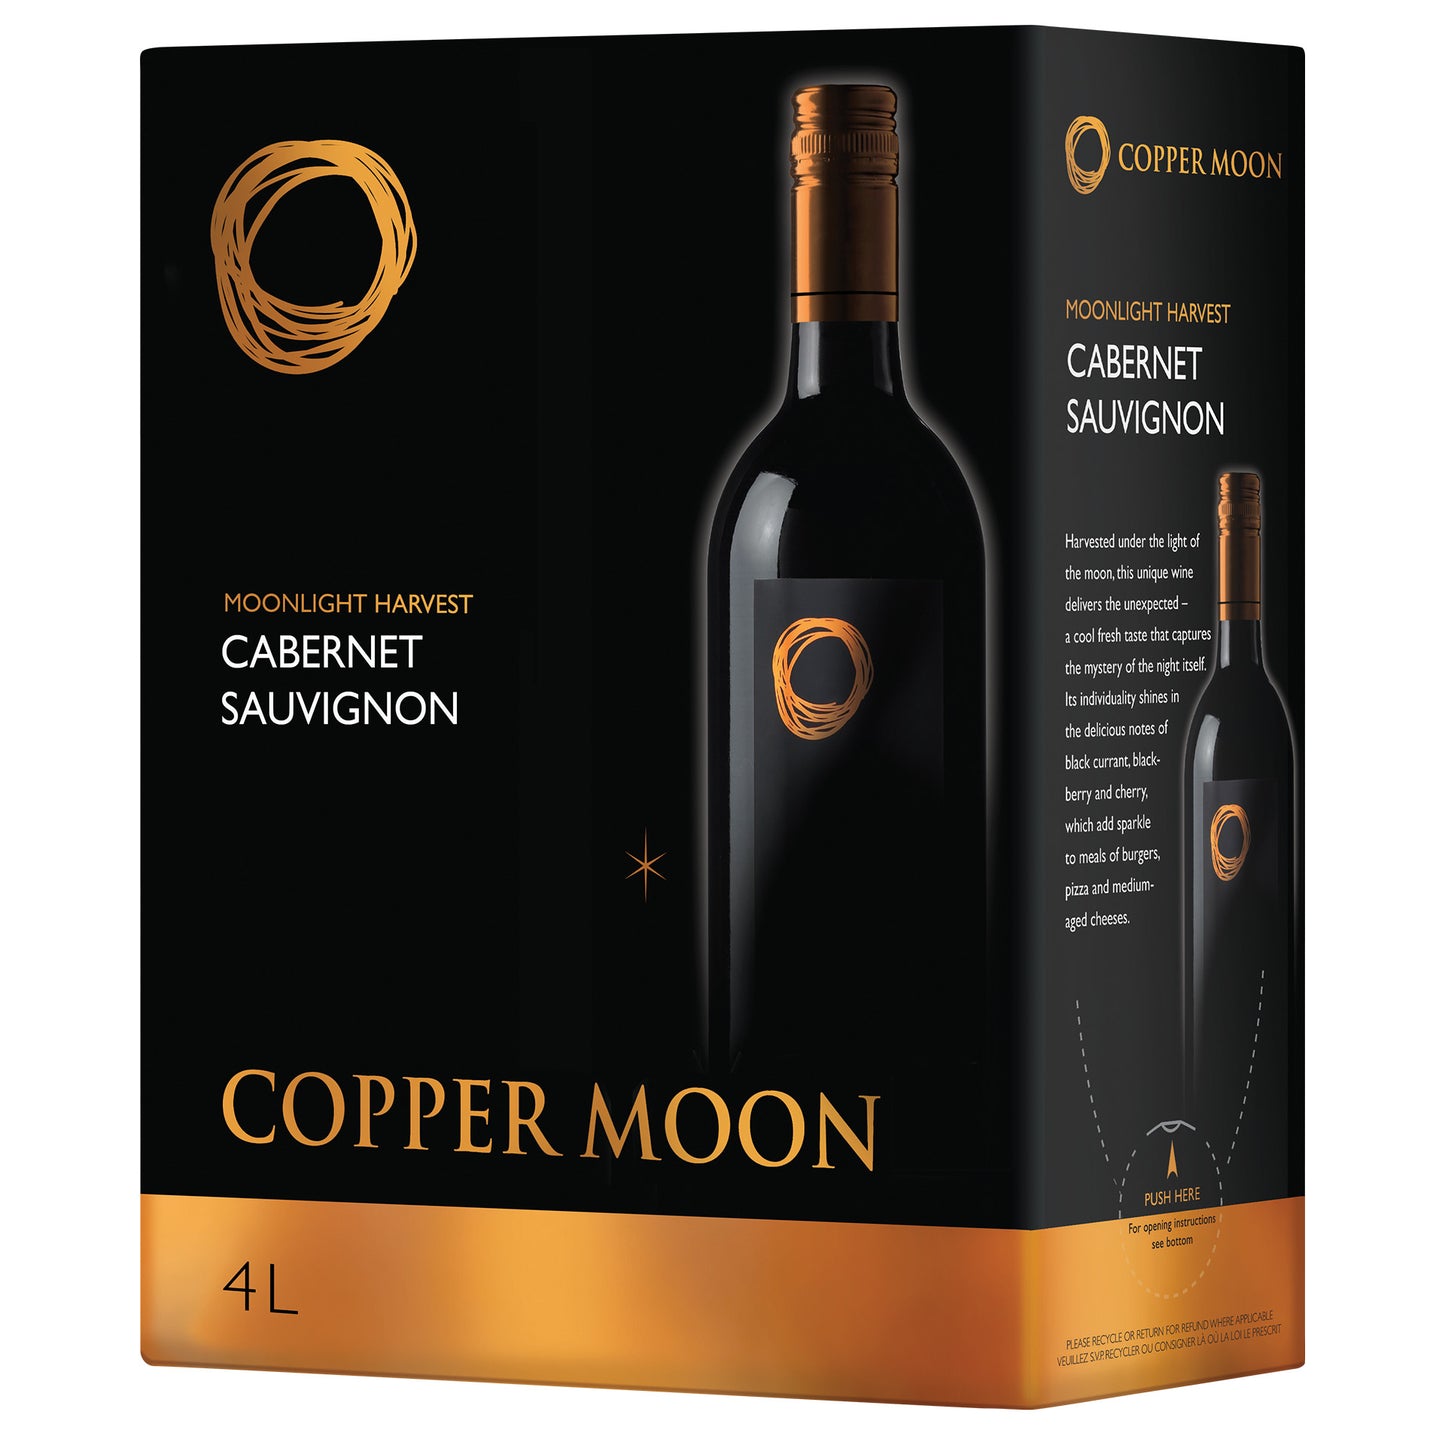 Copper Moon Caberrnet Sauvignon